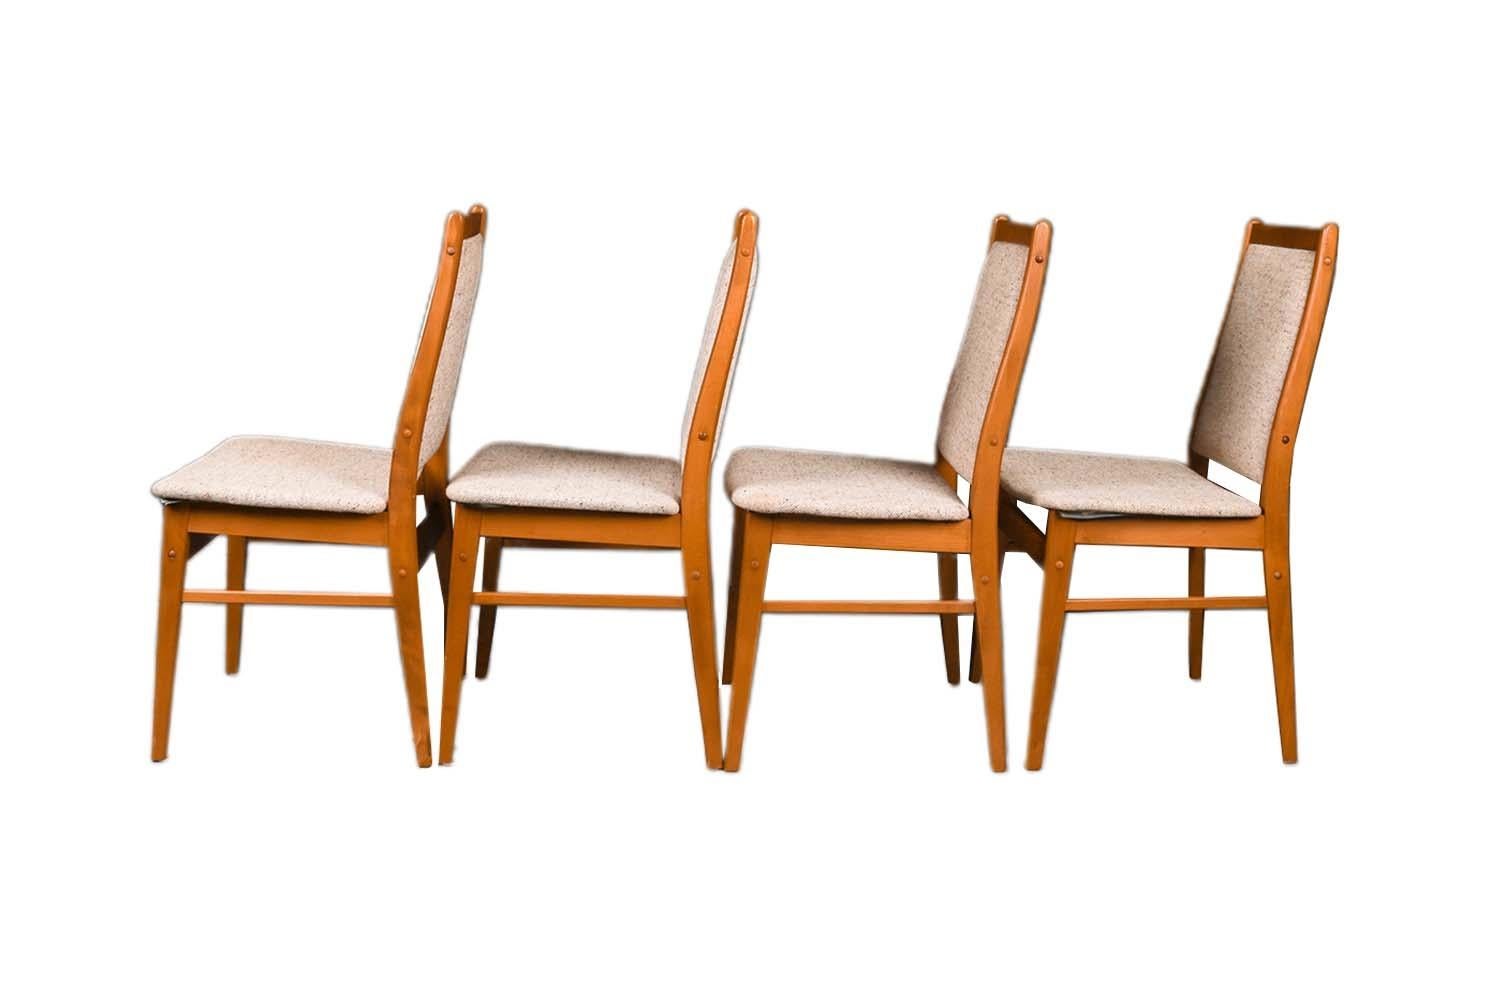 Un ensemble de quatre chaises modernes en teck, extrêmement recherchées, datant des années 1960. Condit est un ensemble complet de quatre pièces assorties, chacune d'entre elles étant restée dans son état d'origine. Les cadres en teck, les hauts